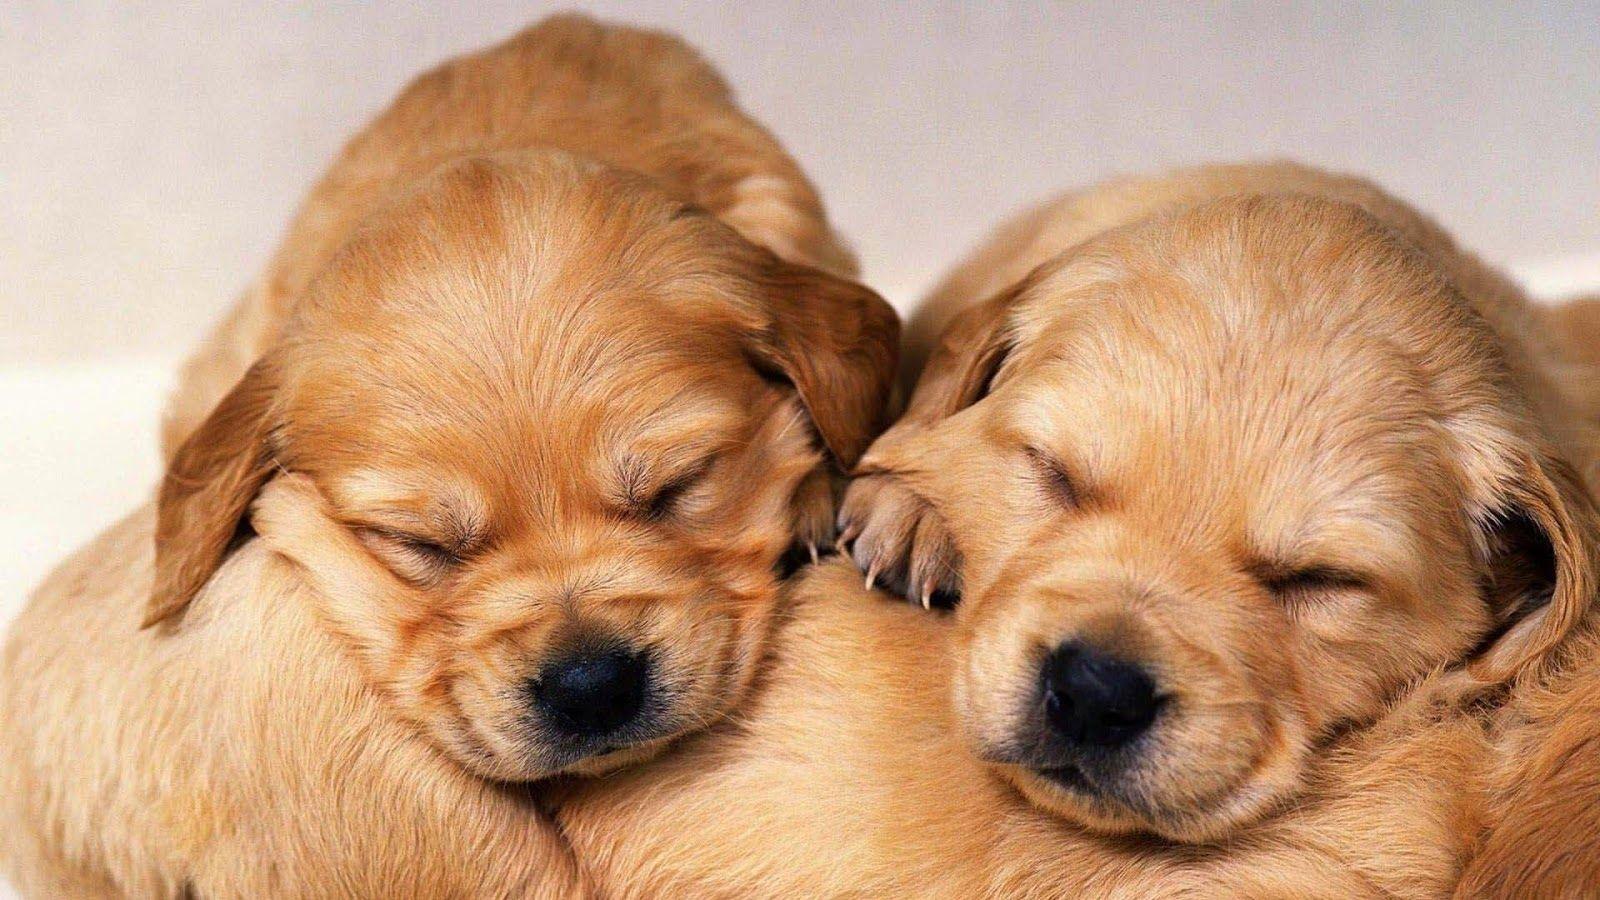 Free HD Wallpaper: Cute Golden Retriever Puppies Wallpaper image